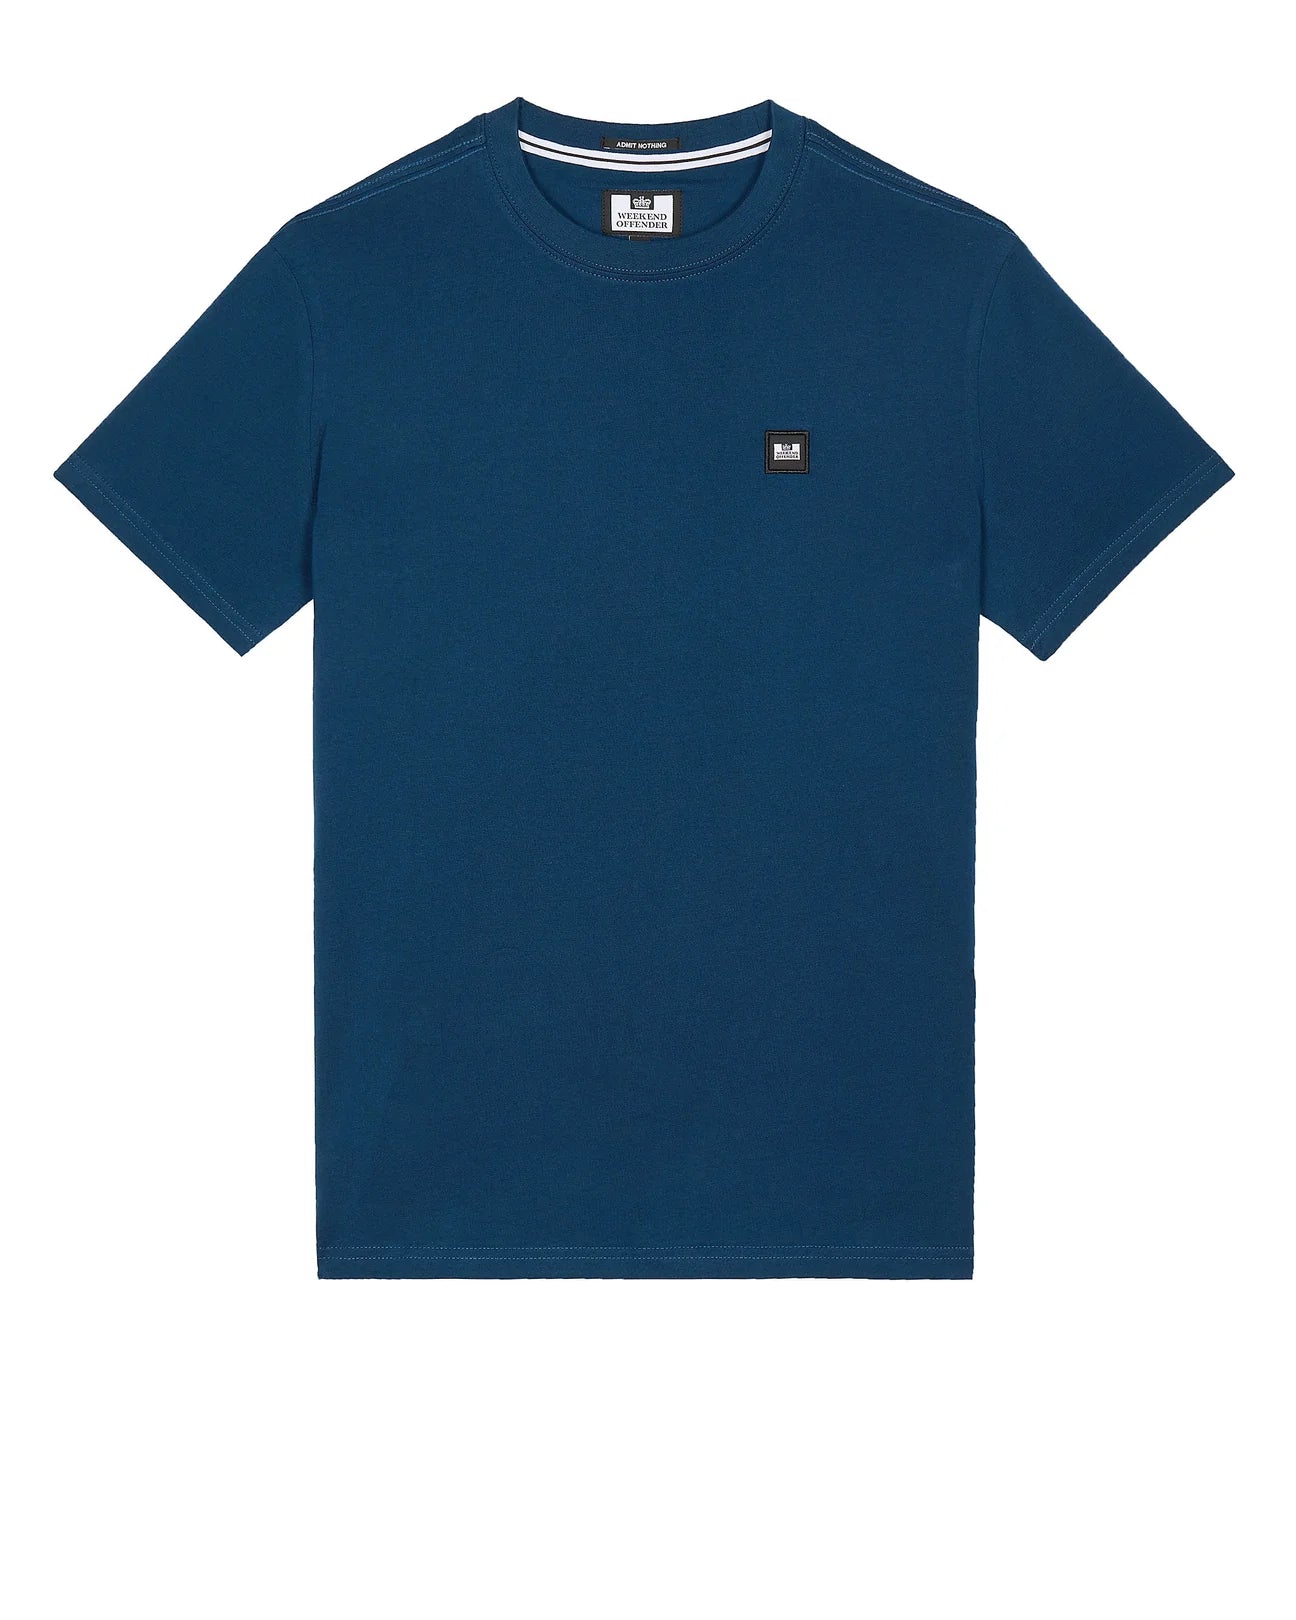 Weekend Offender- Cannon Beach T-Shirt Juniper Blue